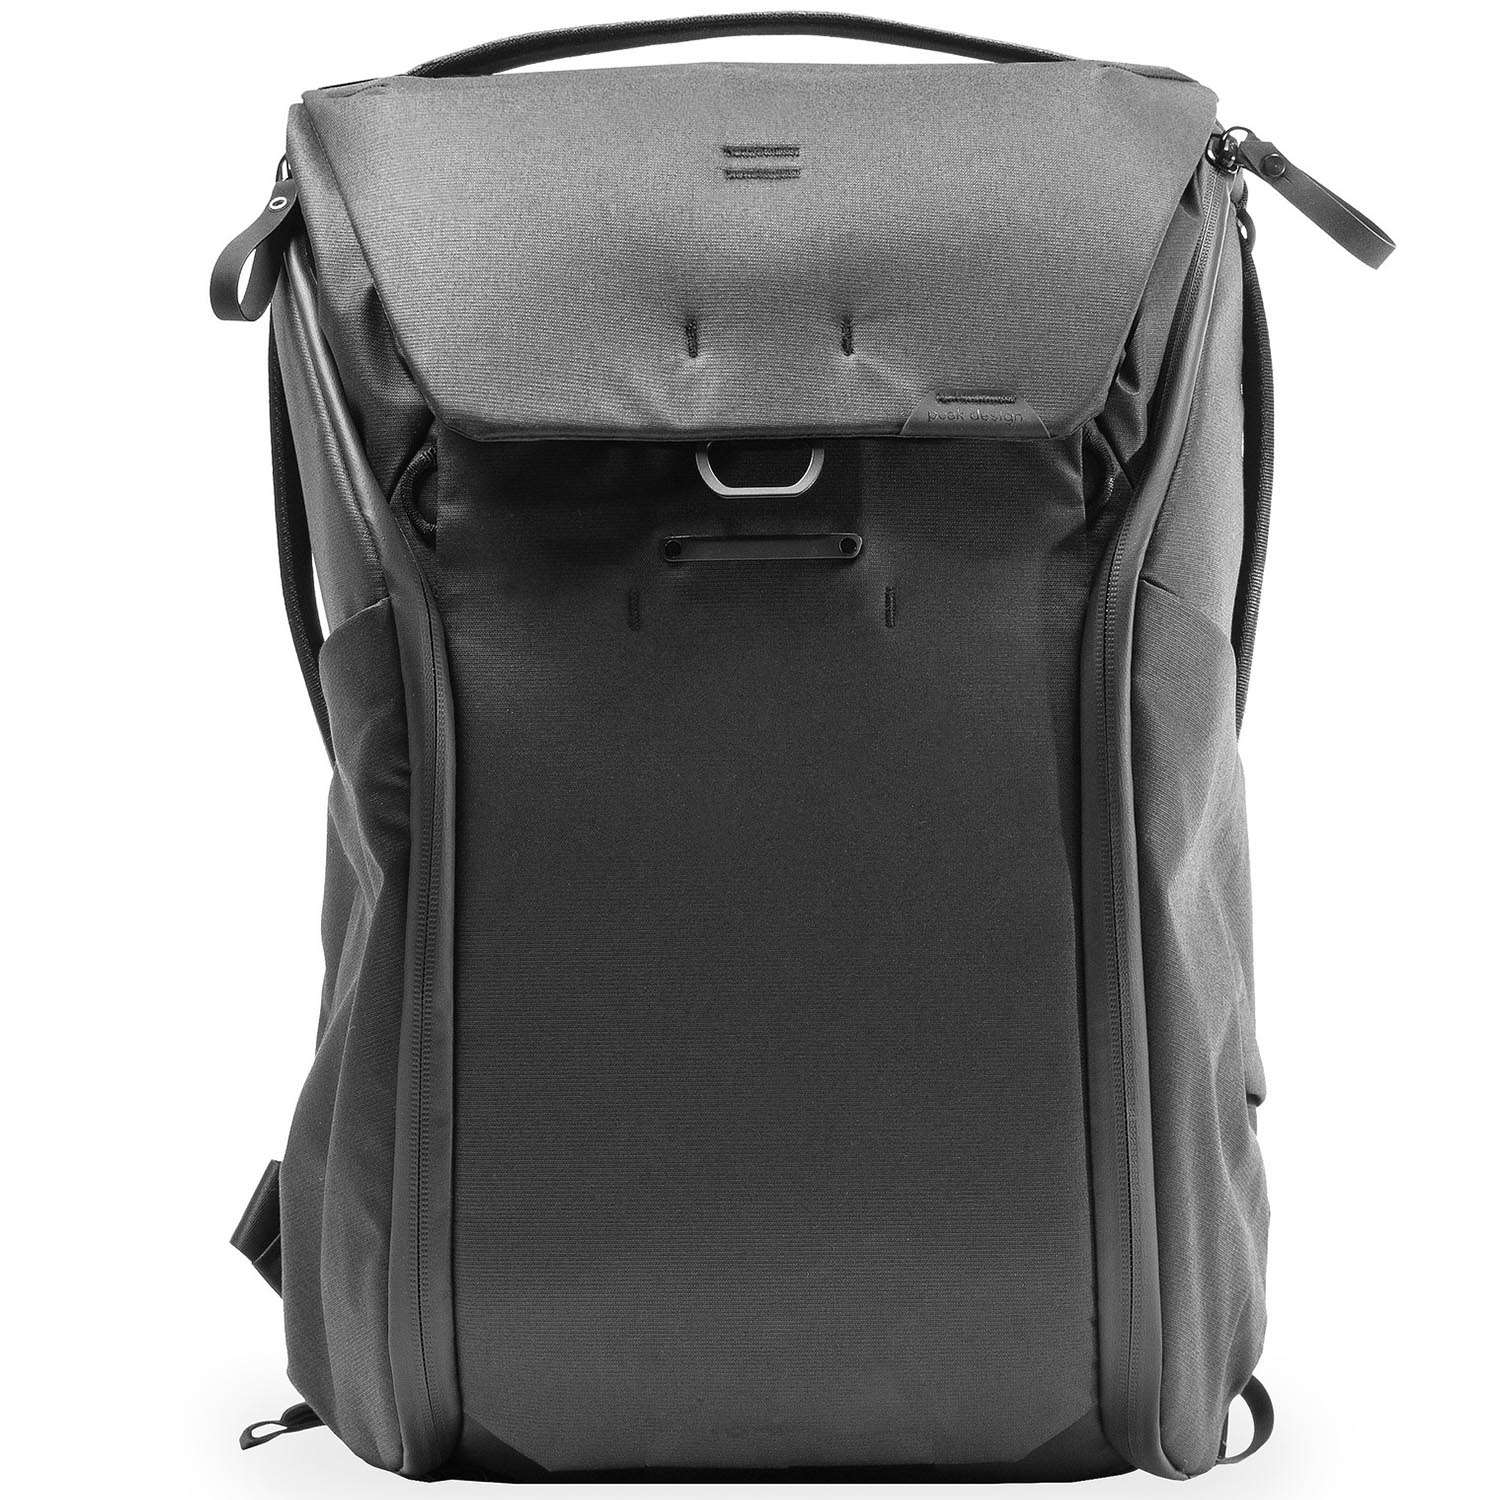 Peak Design Everyday Backpack 30L v2